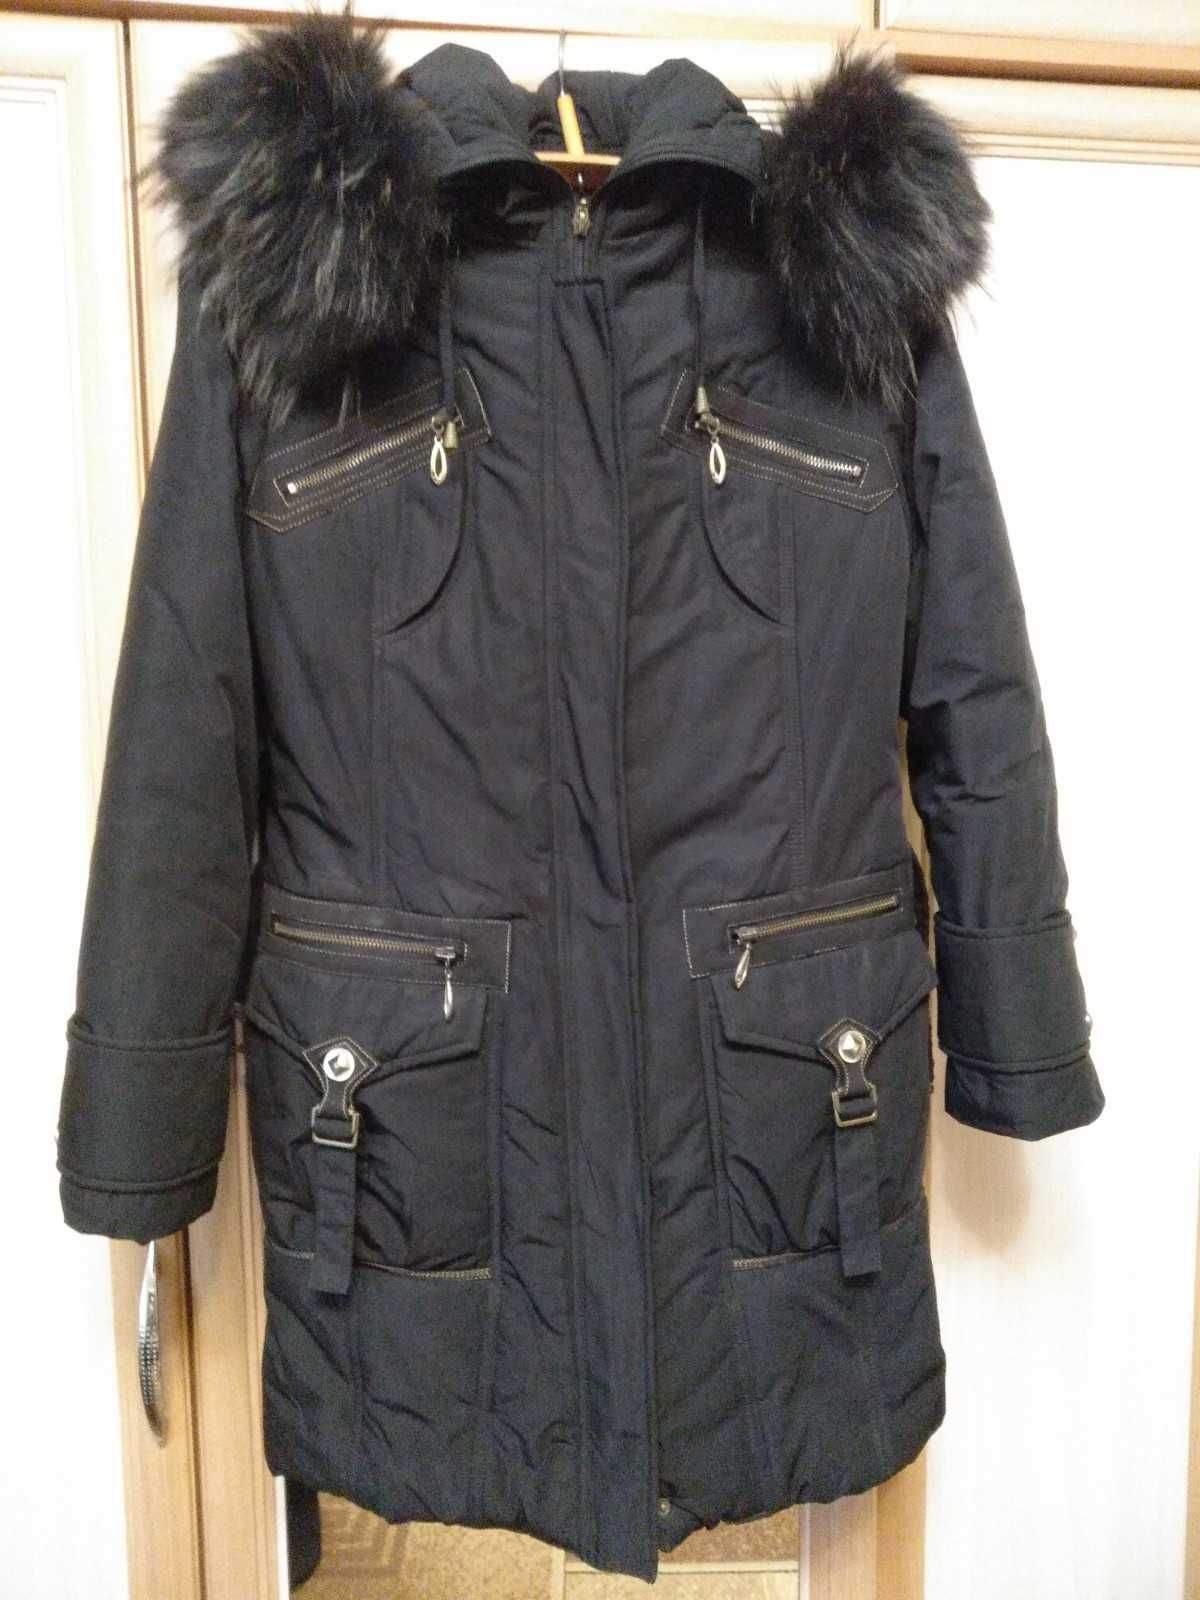 Пуховик жіночий з натуральн хутром,46-48 р-р.Пальто для дівчини.Куртка